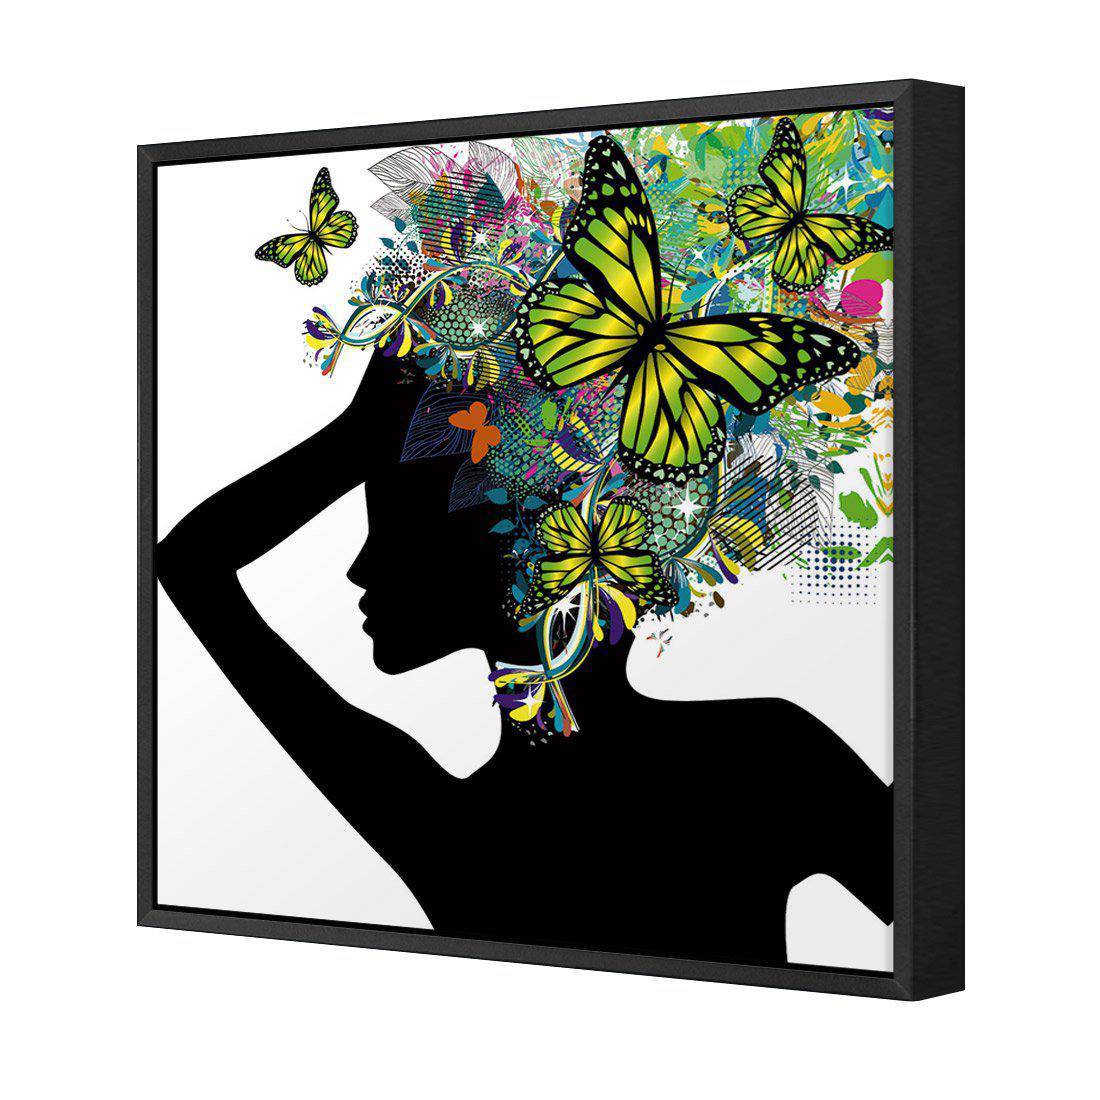 Silhouette Of Butterflies Canvas Art-Canvas-Wall Art Designs-30x30cm-Canvas - Black Frame-Wall Art Designs